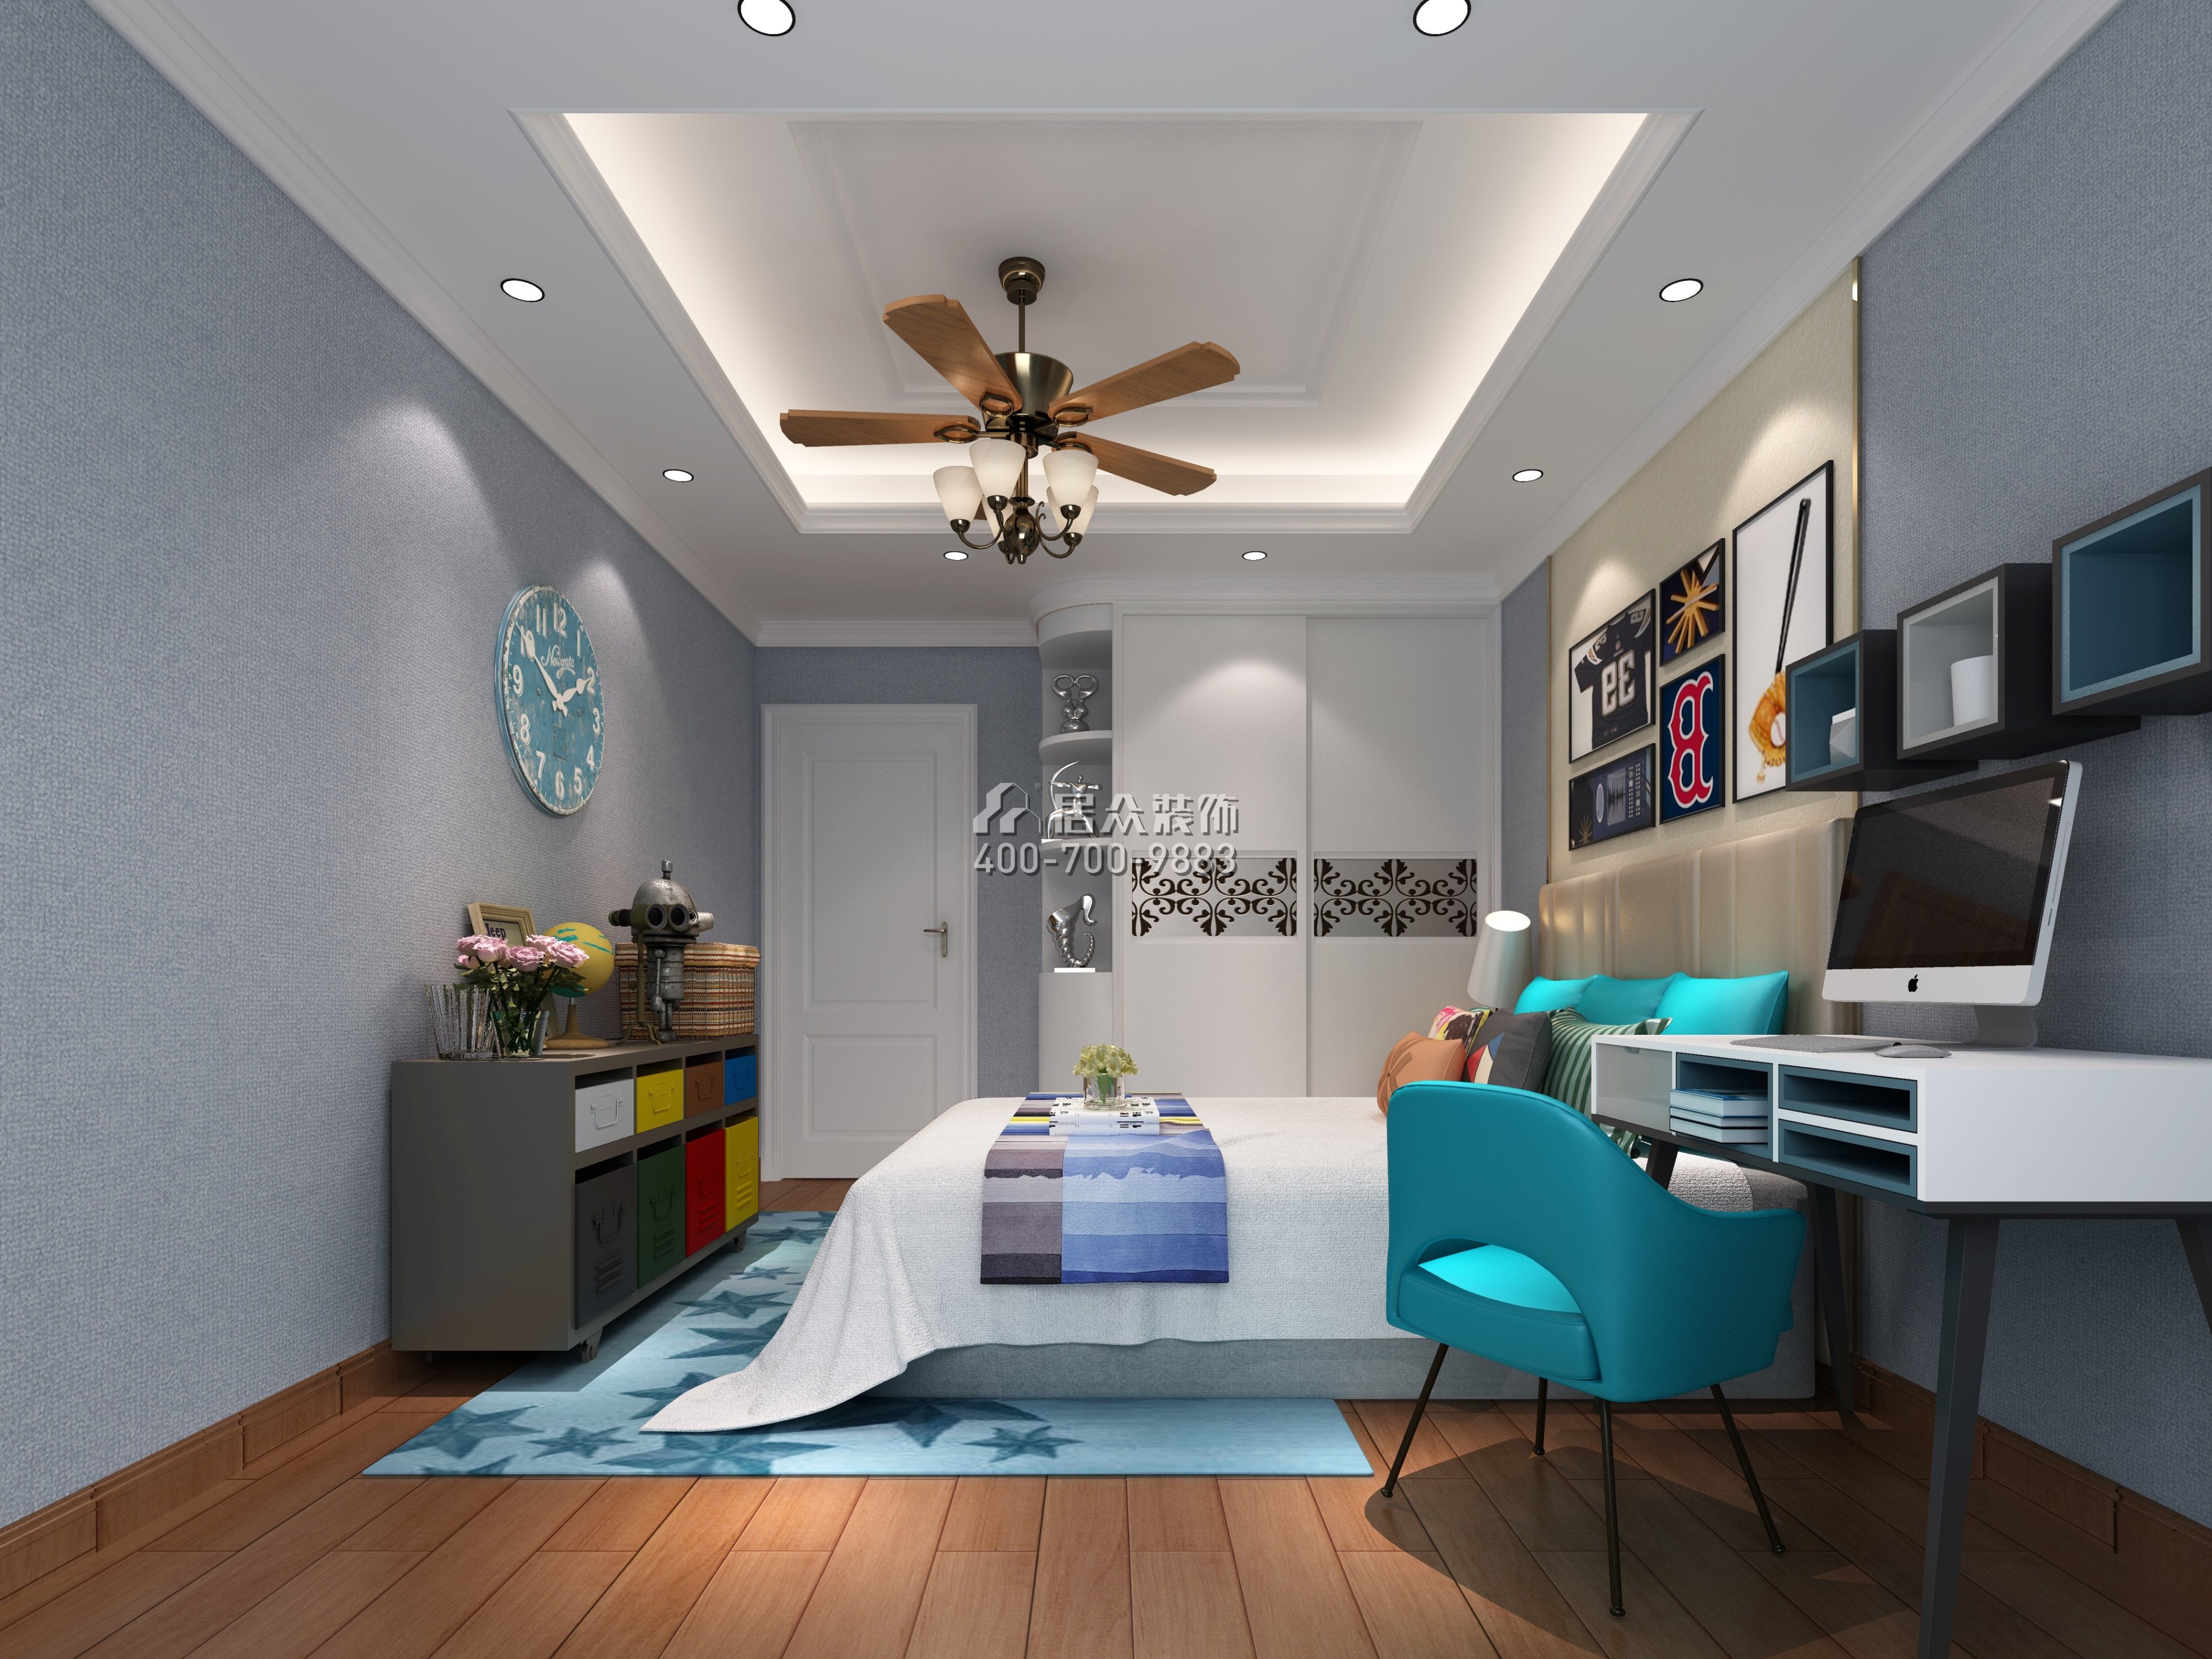 中信新城125平方米混搭風格平層戶型臥室裝修效果圖